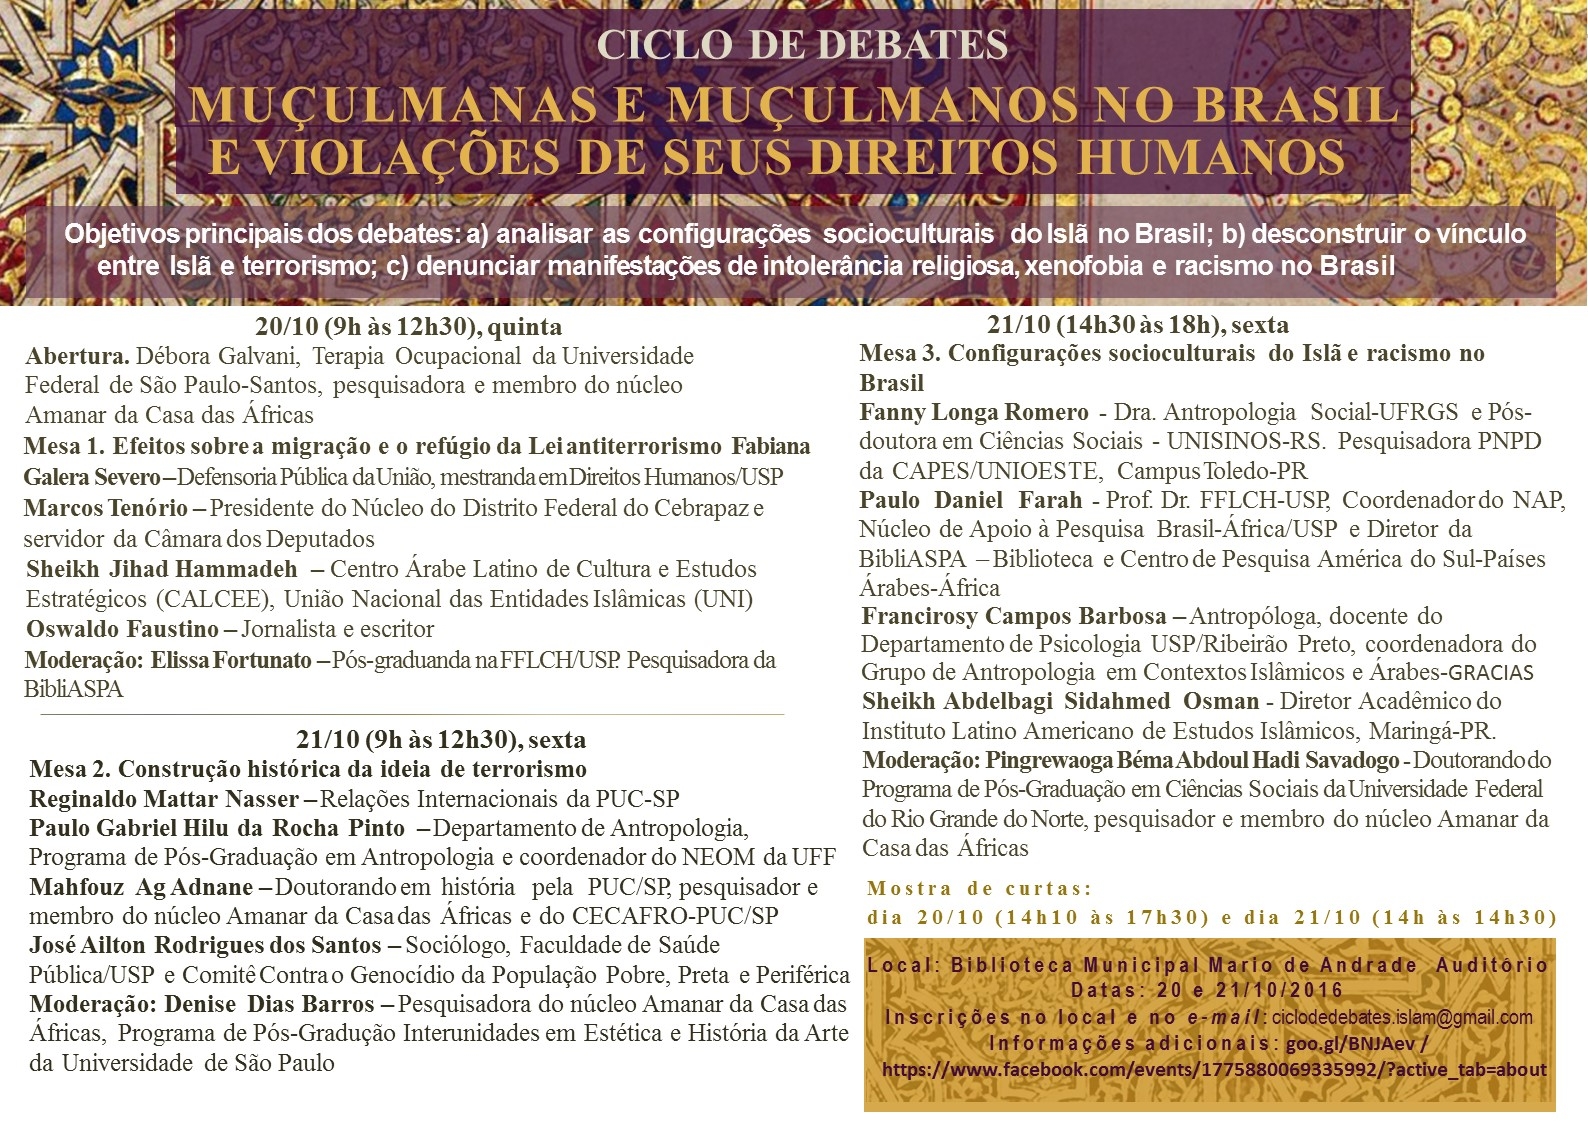 Biblioteca Mário de Andrade convida para o ciclo de debates "Muçulmanas e muçulmanos no Brasil e violações de seus direitos humanos"